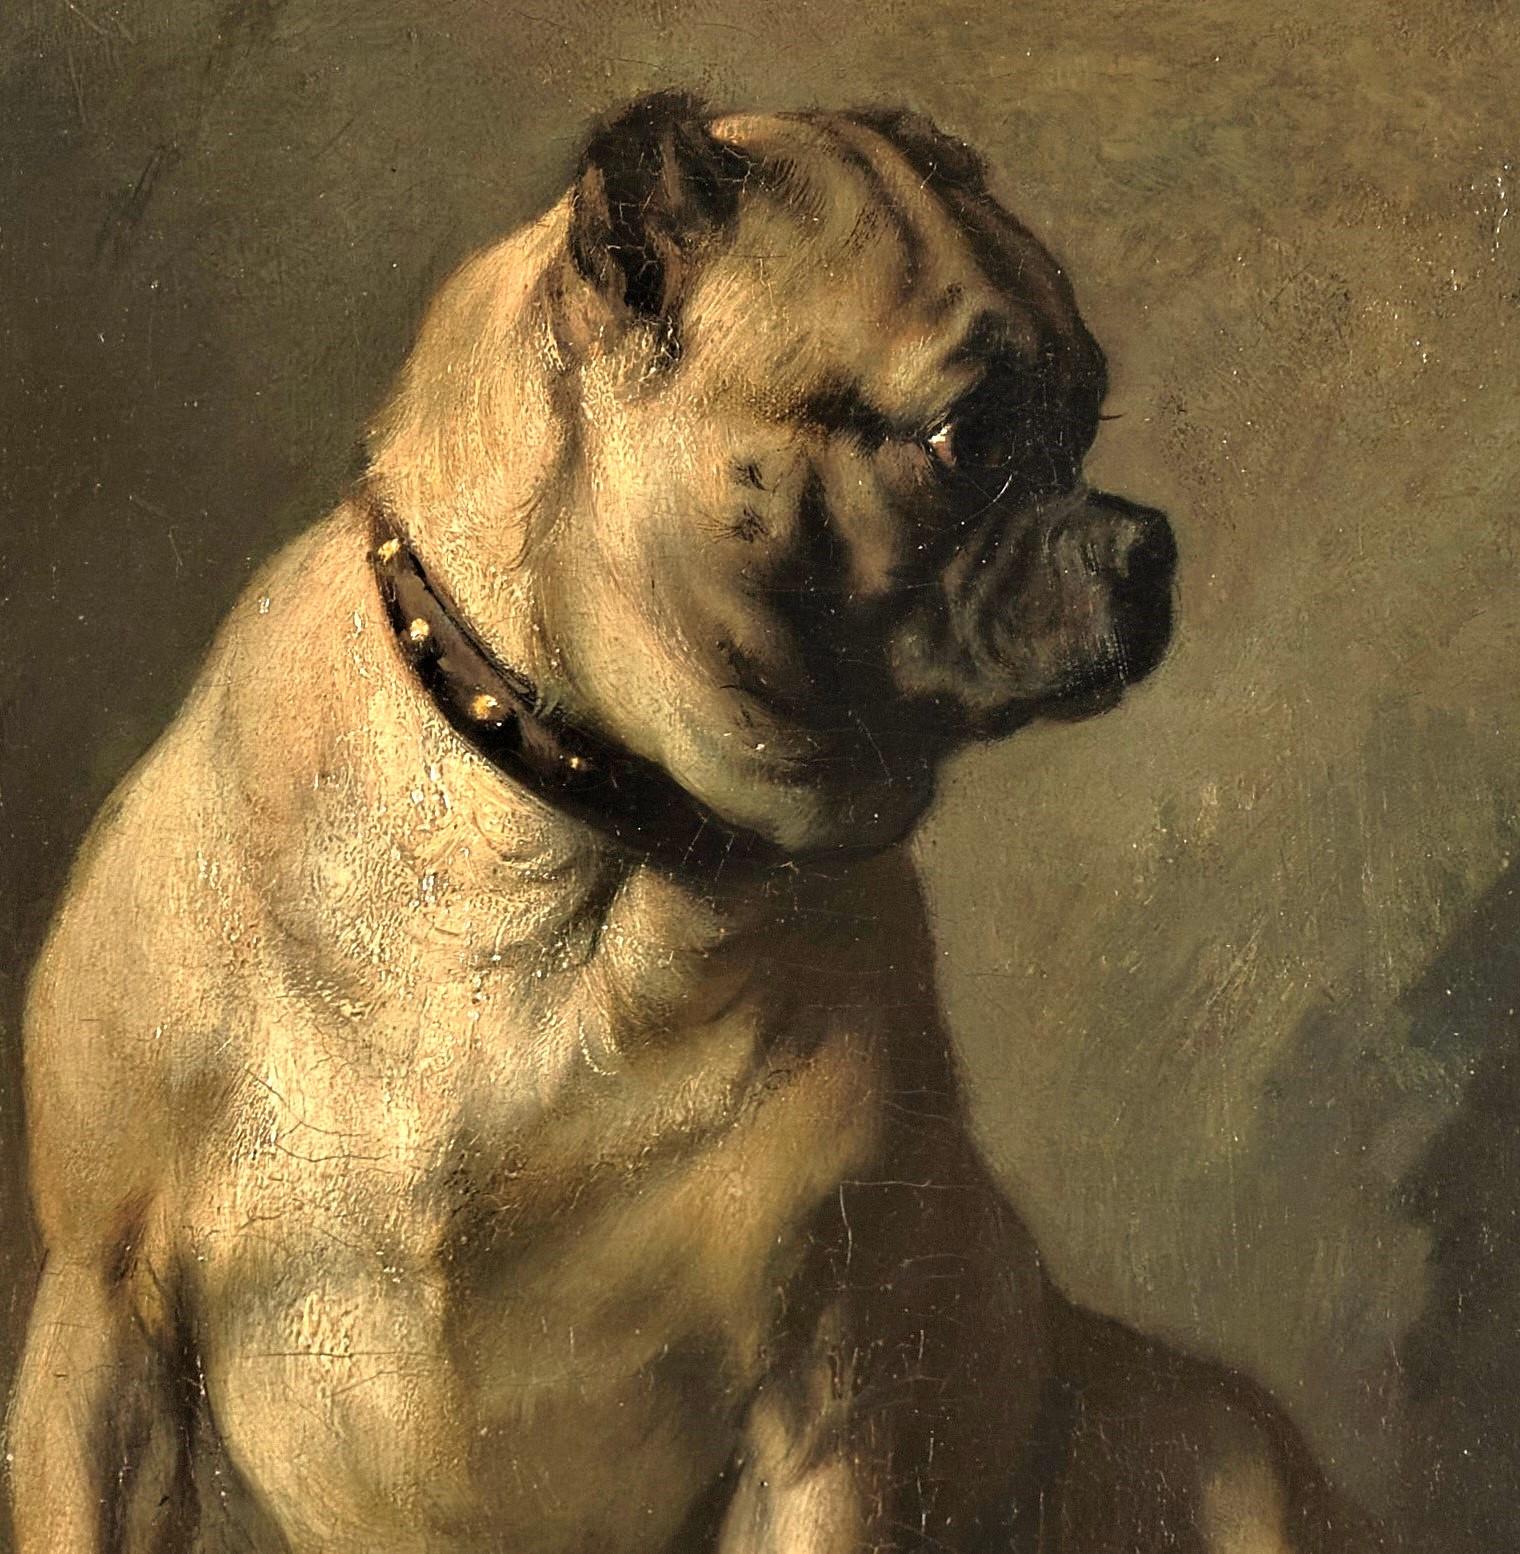 Antique Dog Portrait: "Mops" a Seated Pug, Norbert Schrödl (Vienna, 1842-1912)